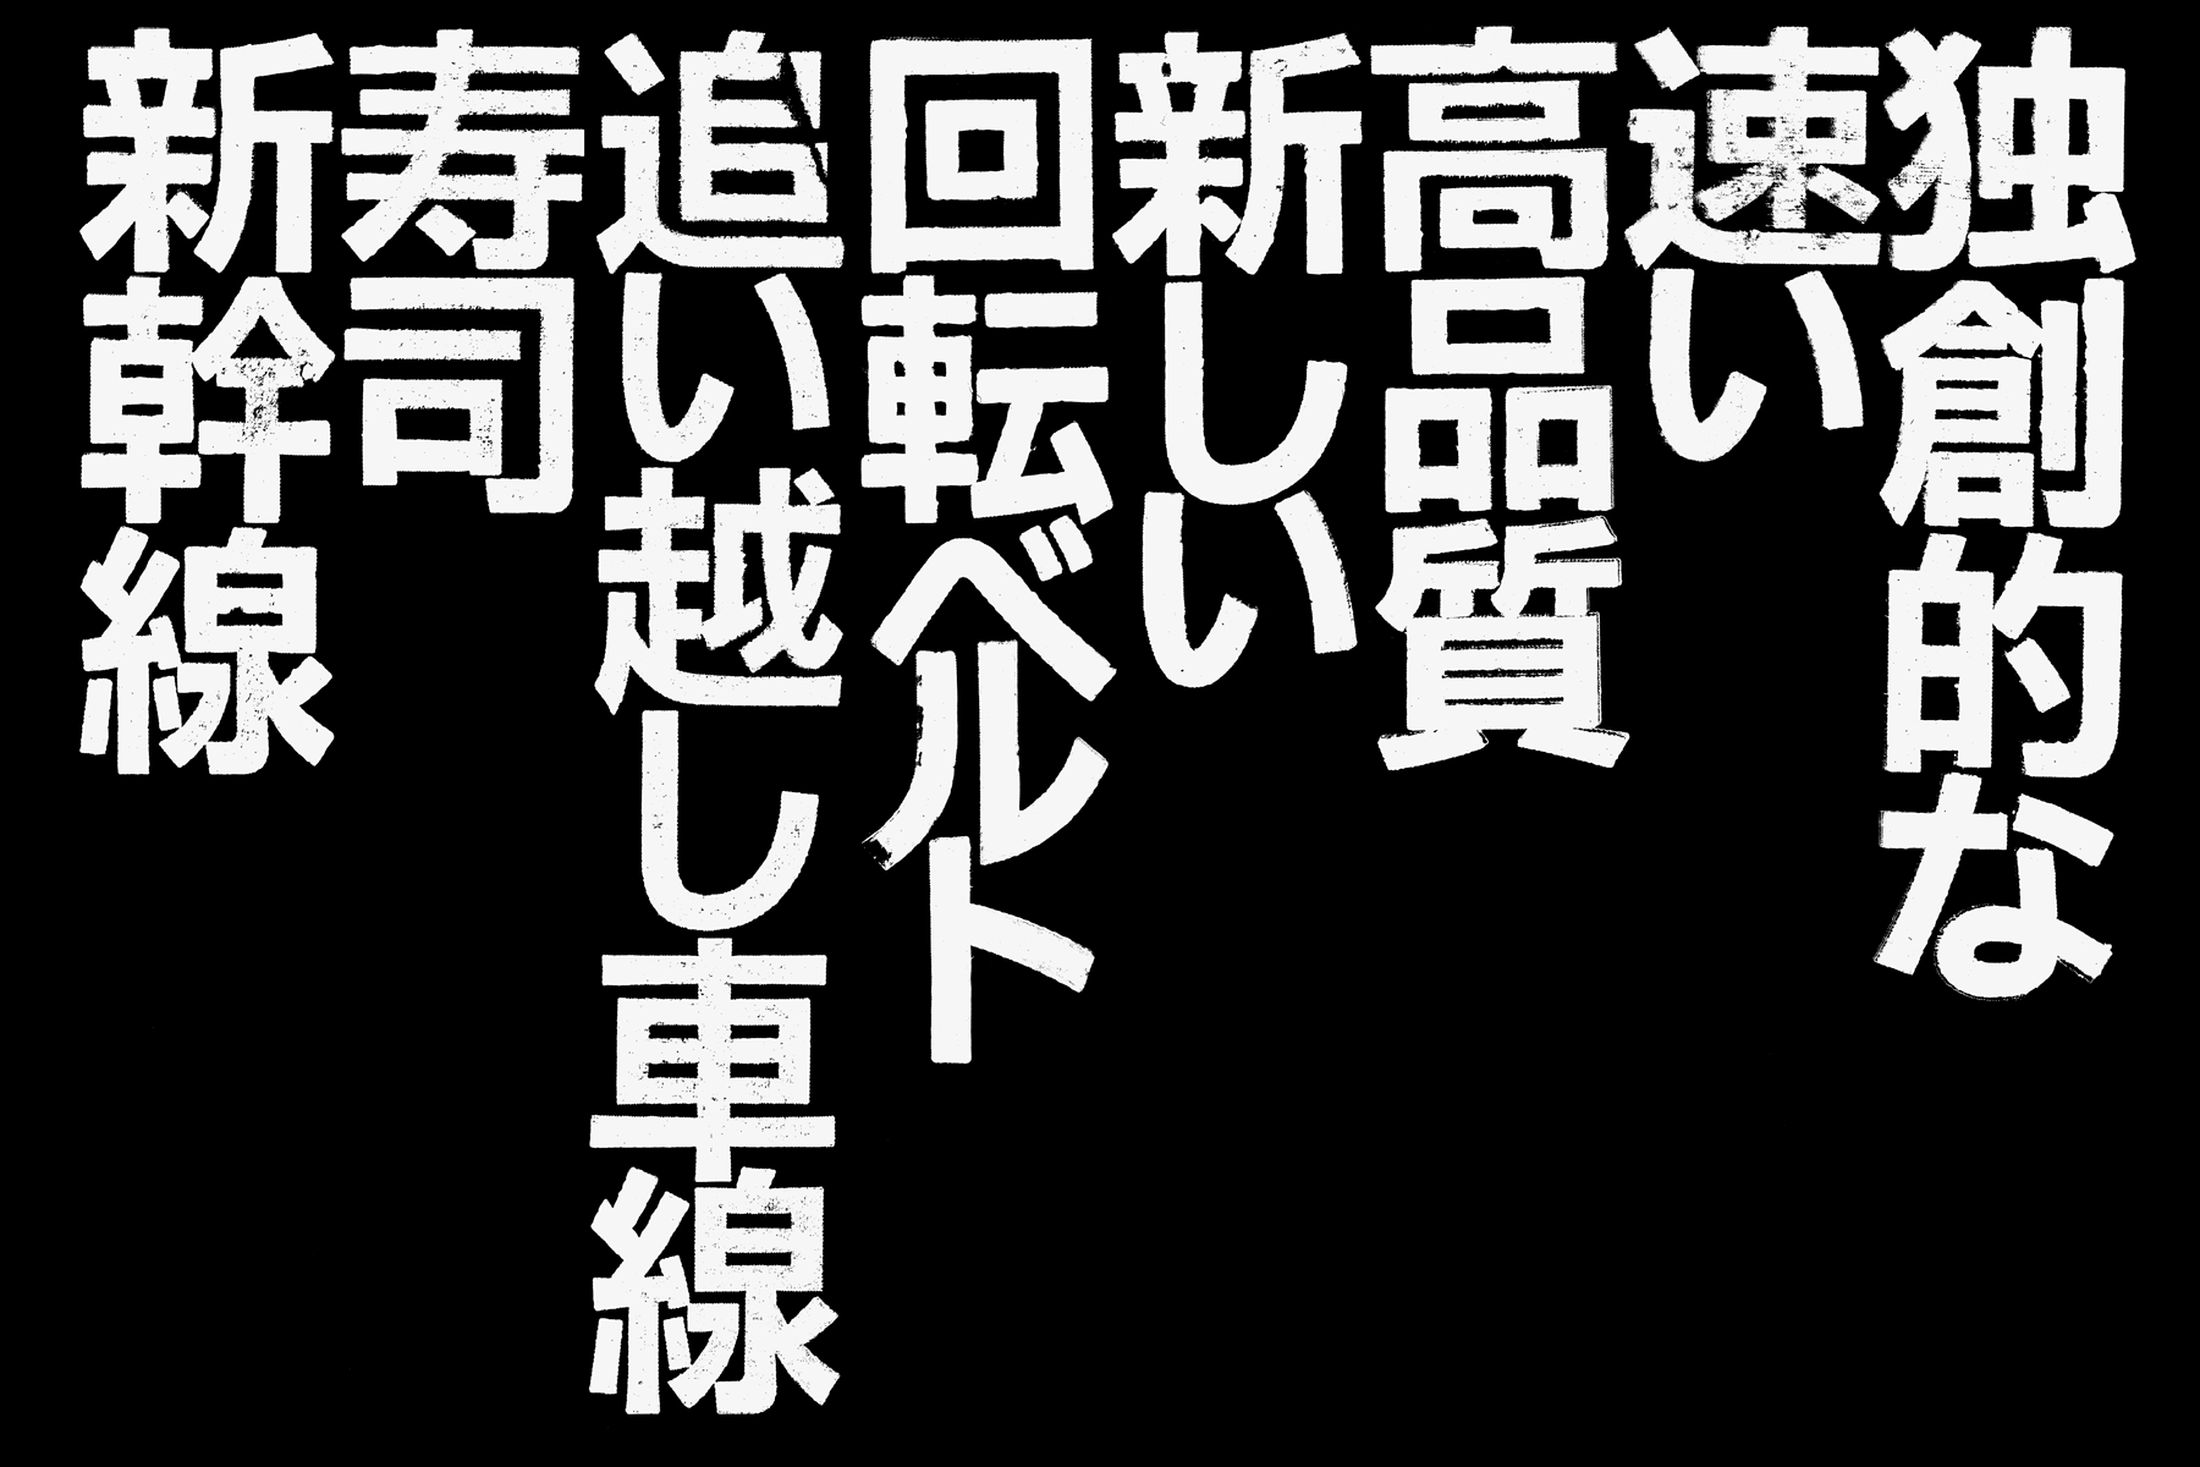 25_yo_graphics_big_kanji.png